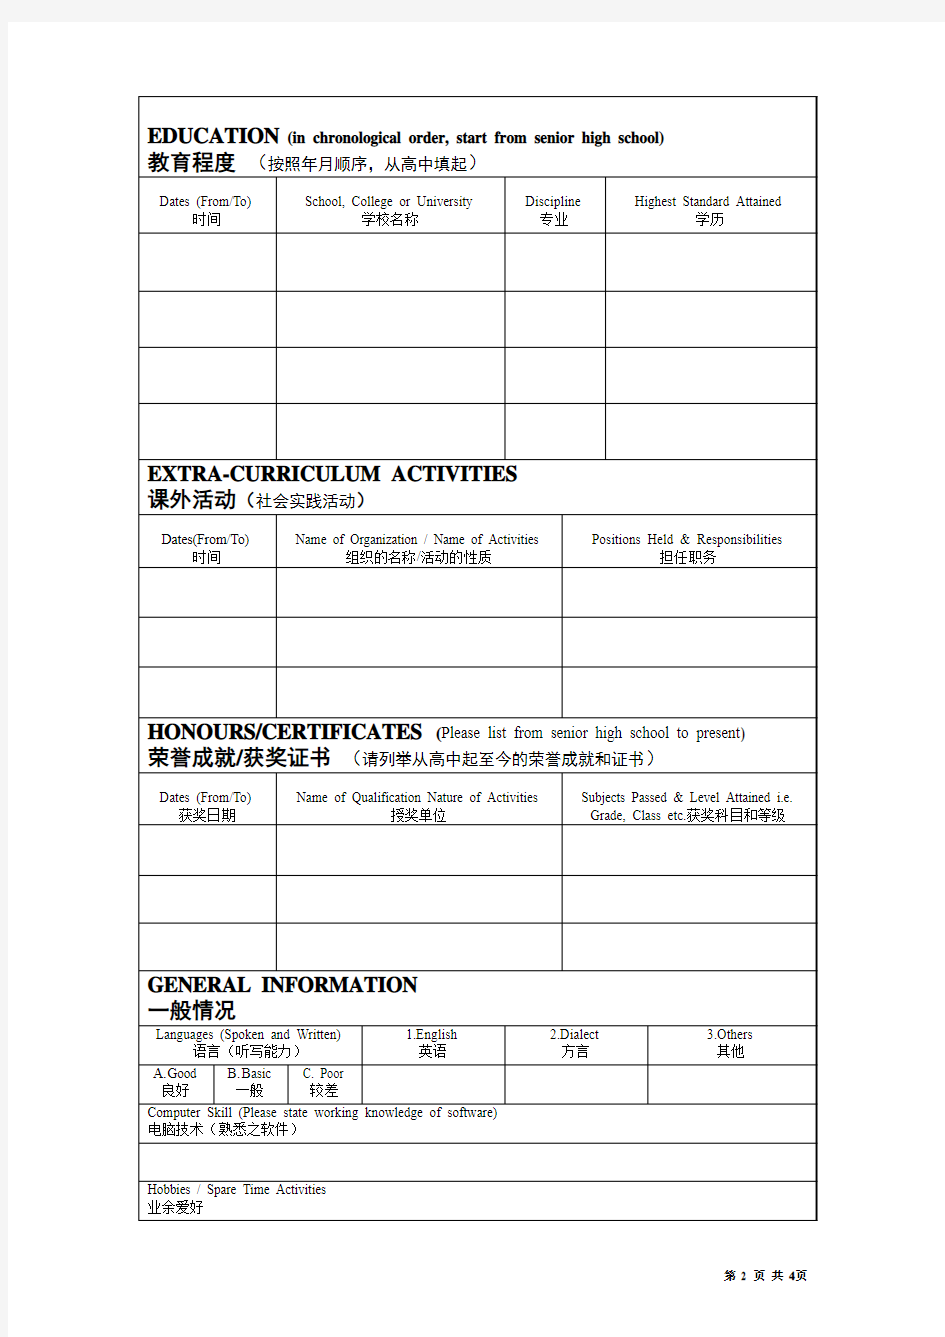 员工信息登记表(中英文)